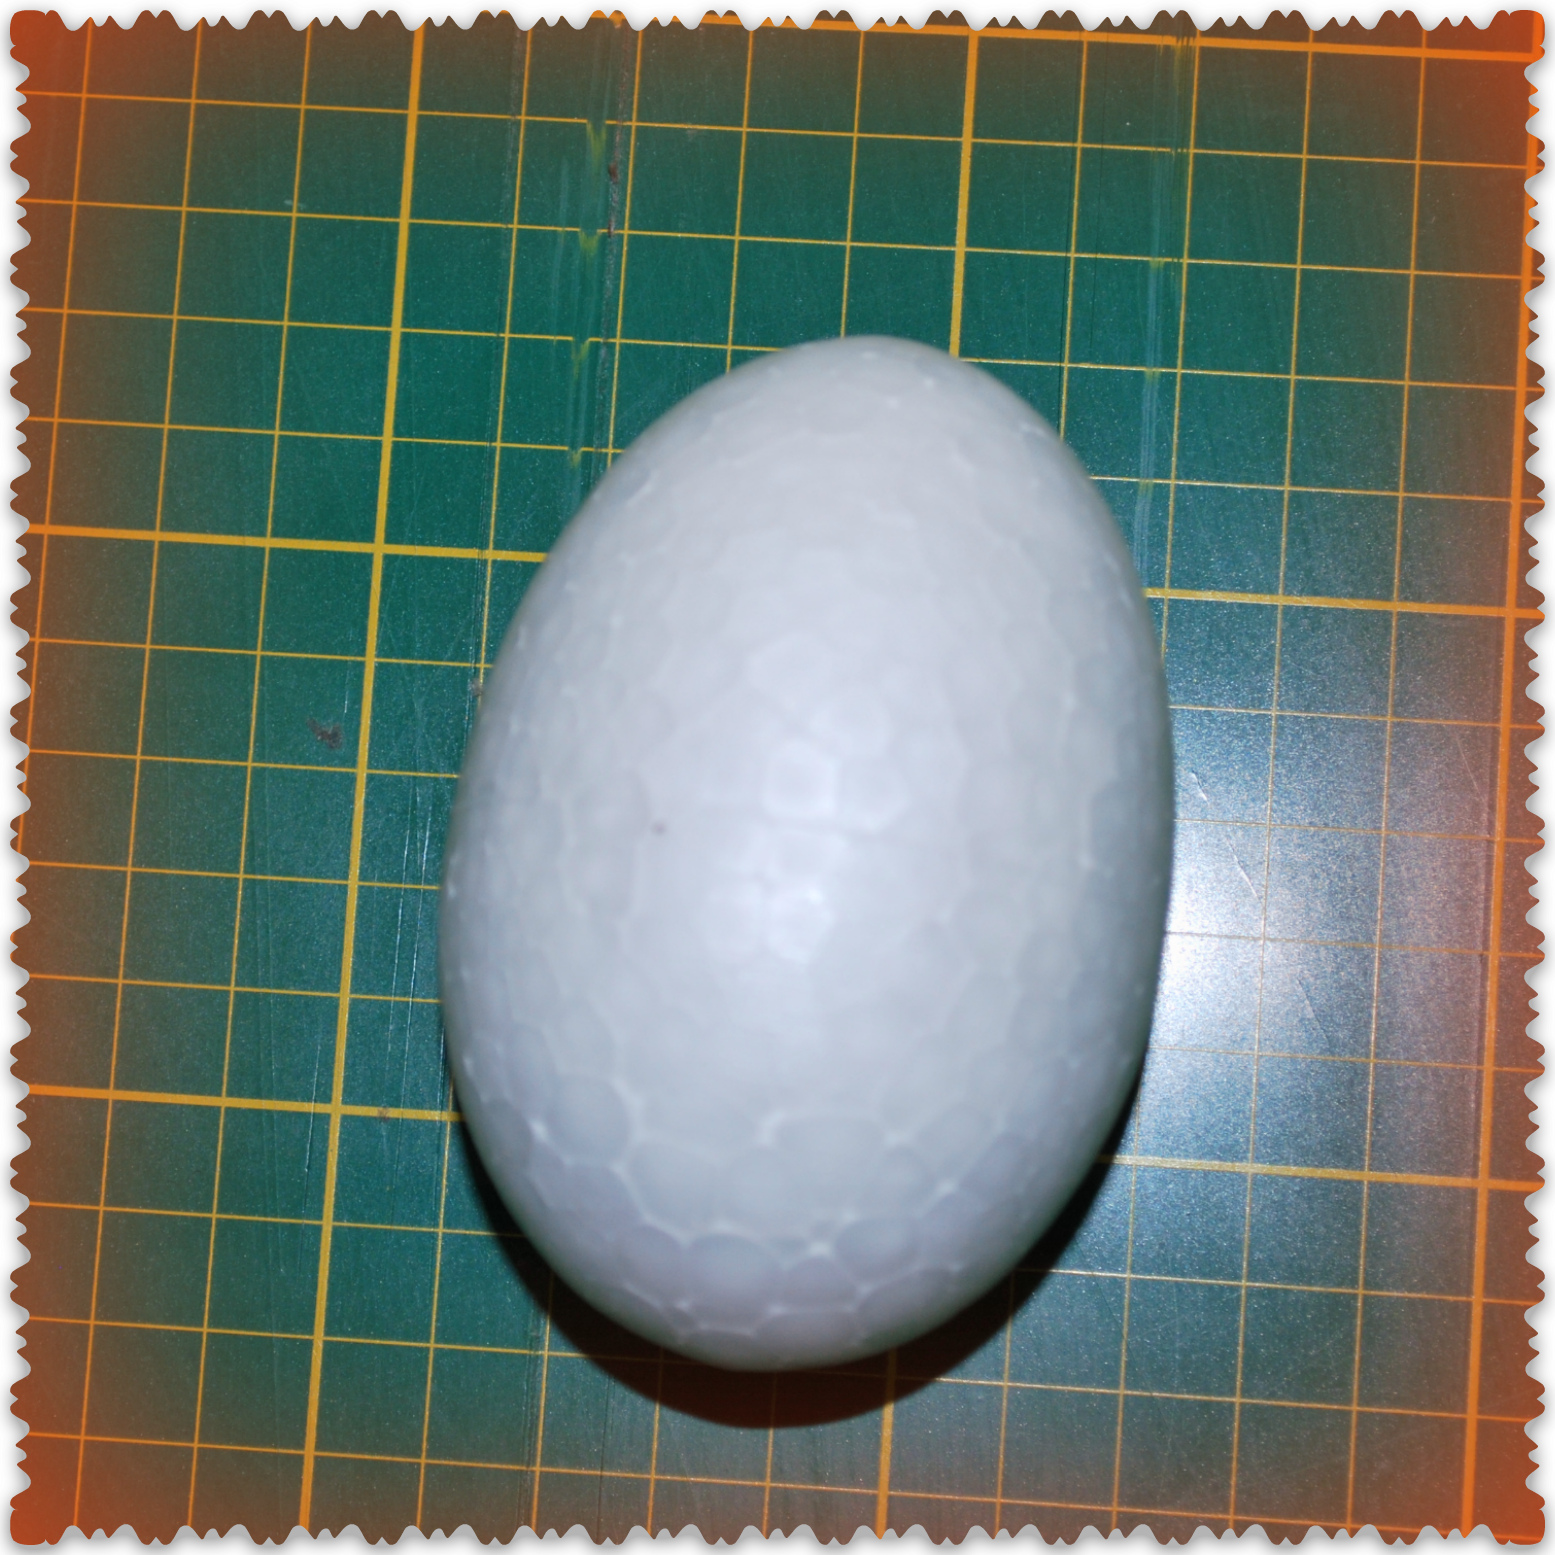 Большое яйцо из пенопласта. Яйцо из пенопласта. Большие яйца из пенопласта. Пенопластовое яйцо большое. Лебедь из пенопластового яйца.